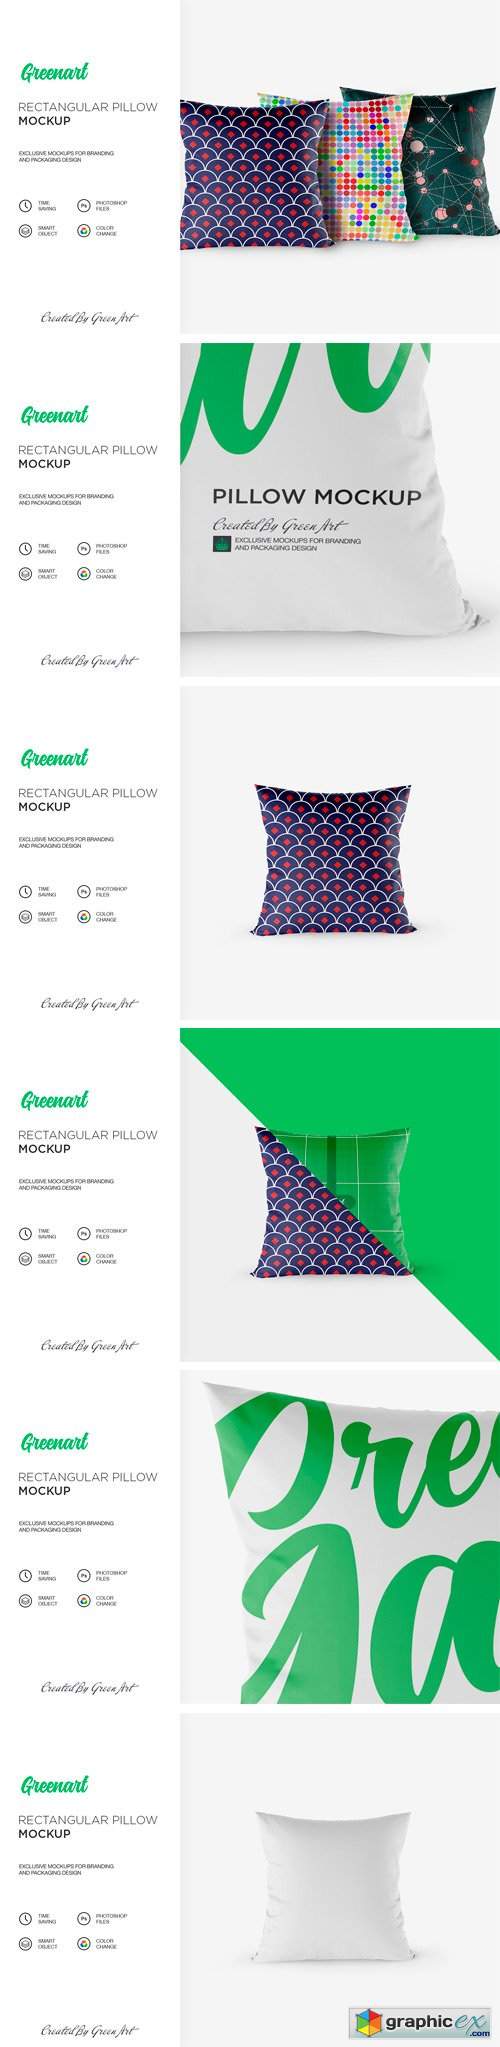 Rectangular Pillow Mockup